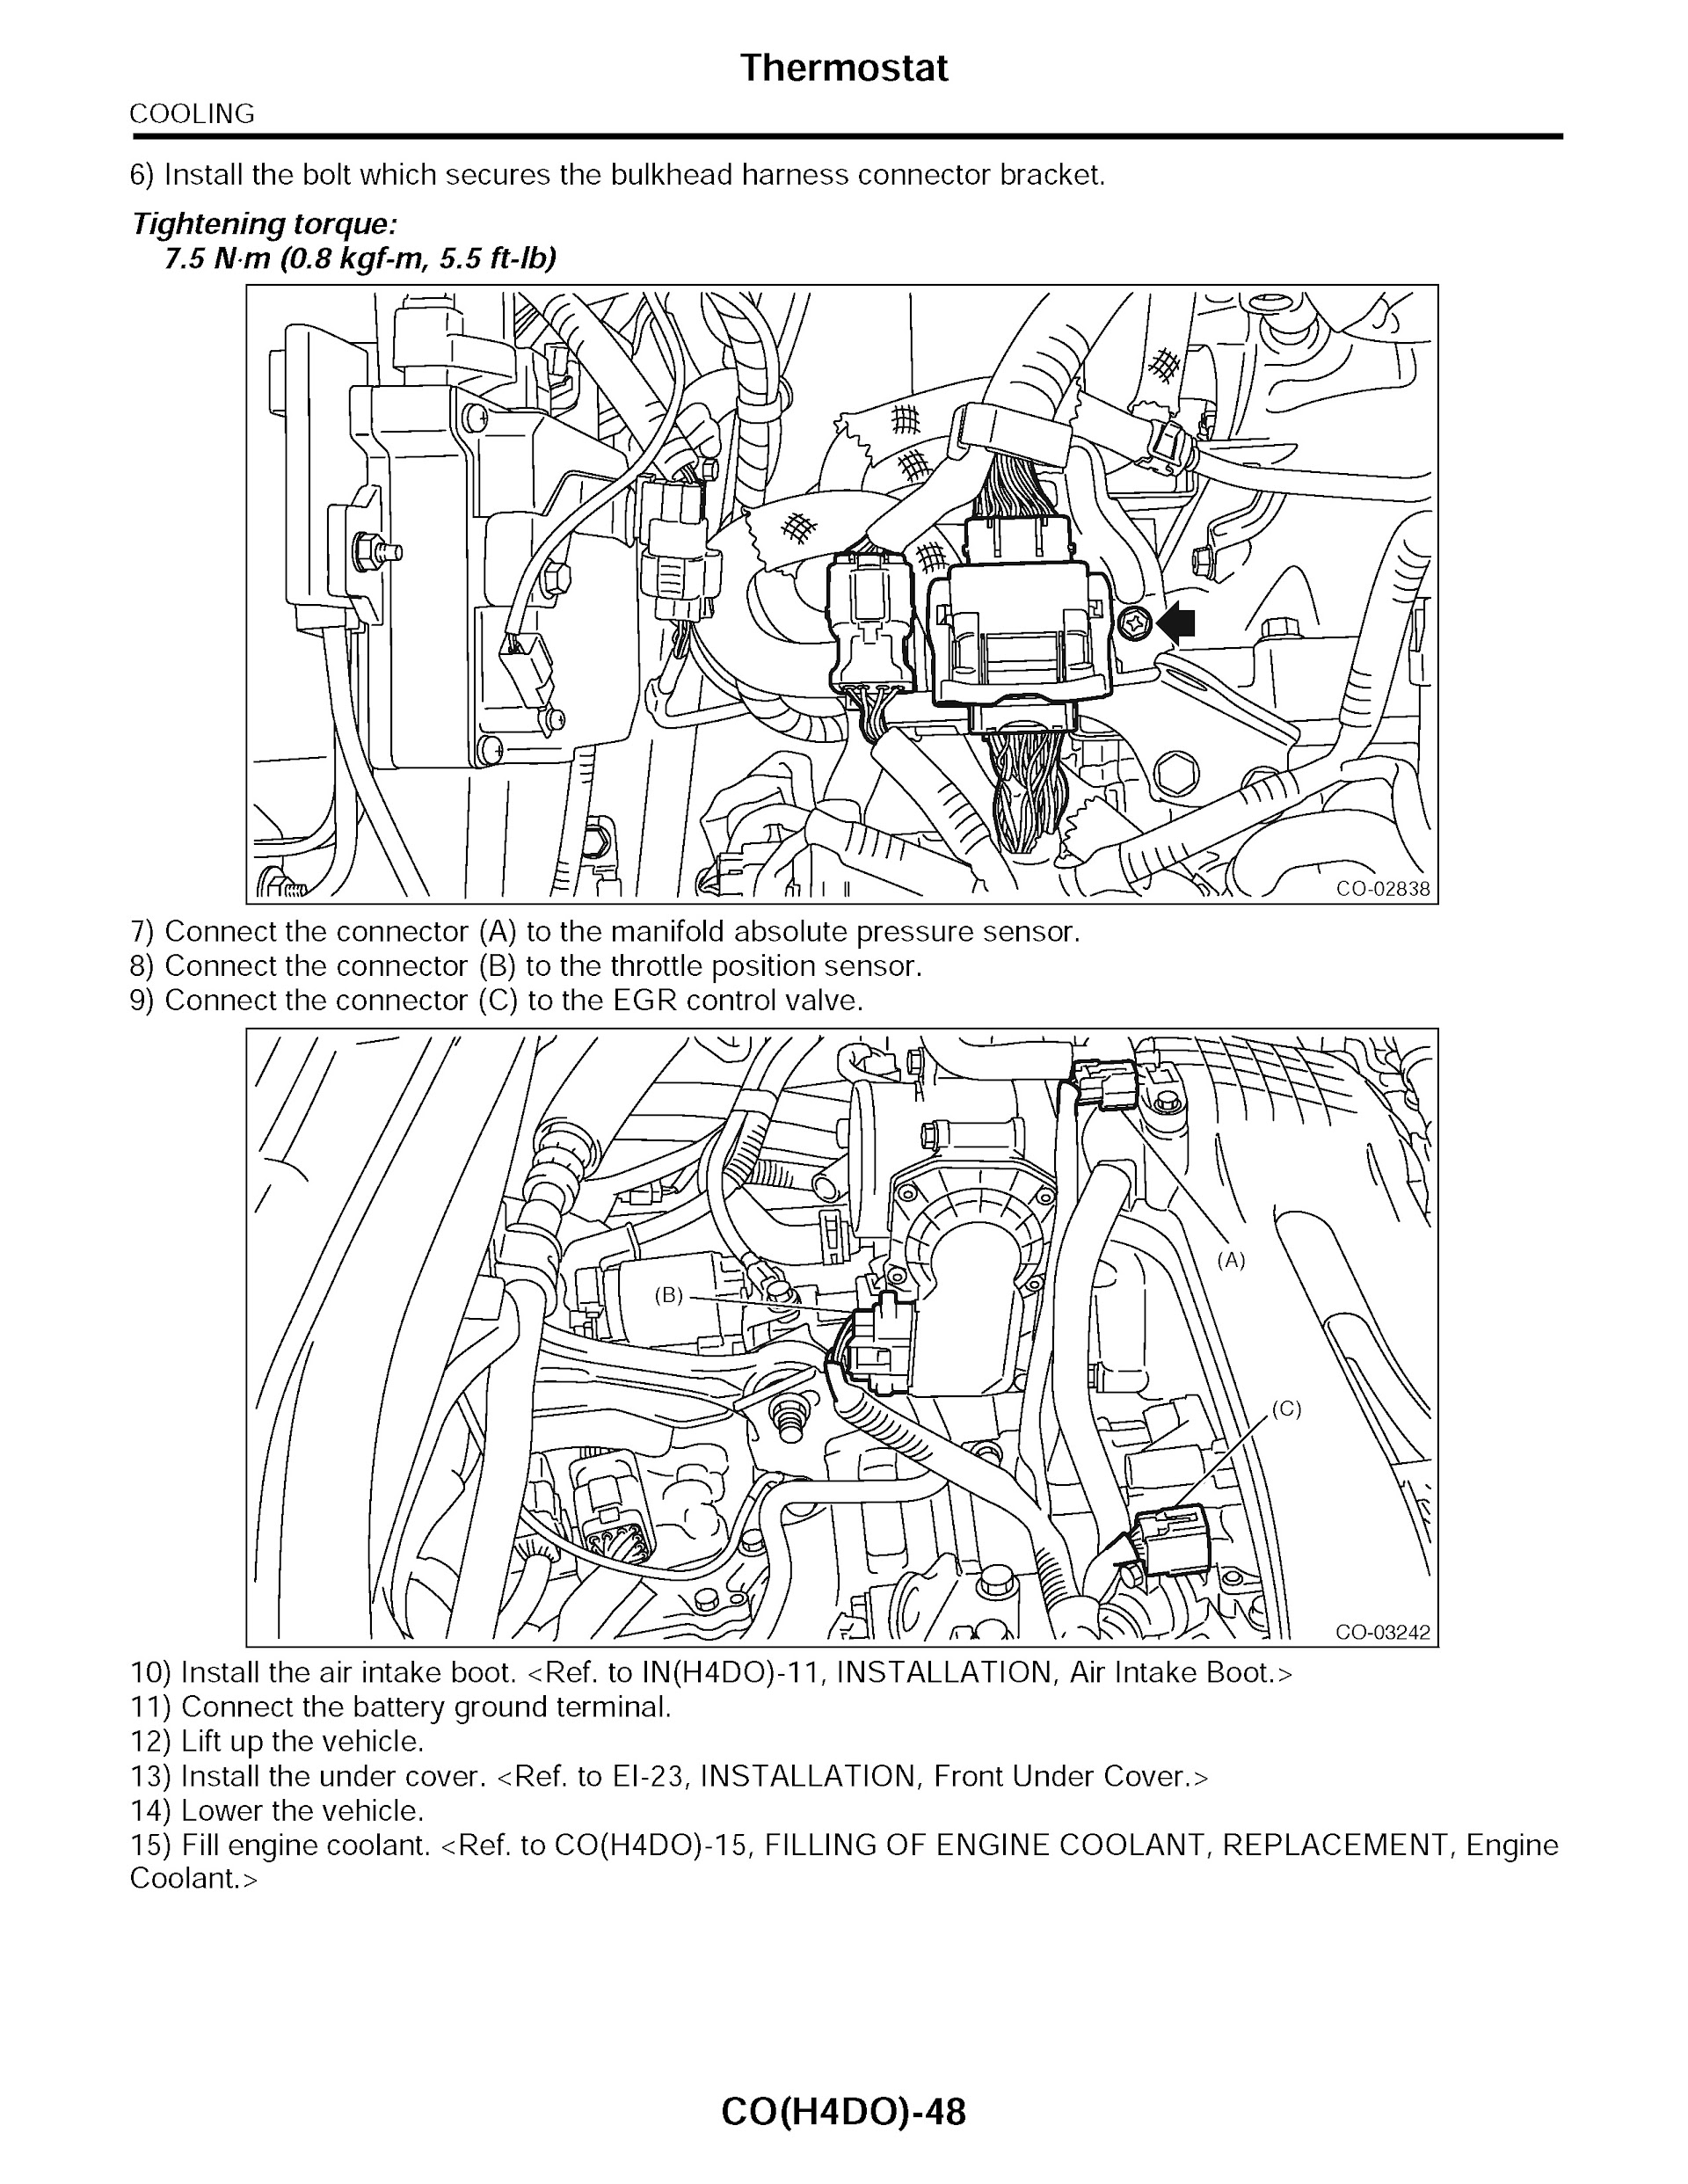 2015 Subaru Forester Repair Manual, Thermostat